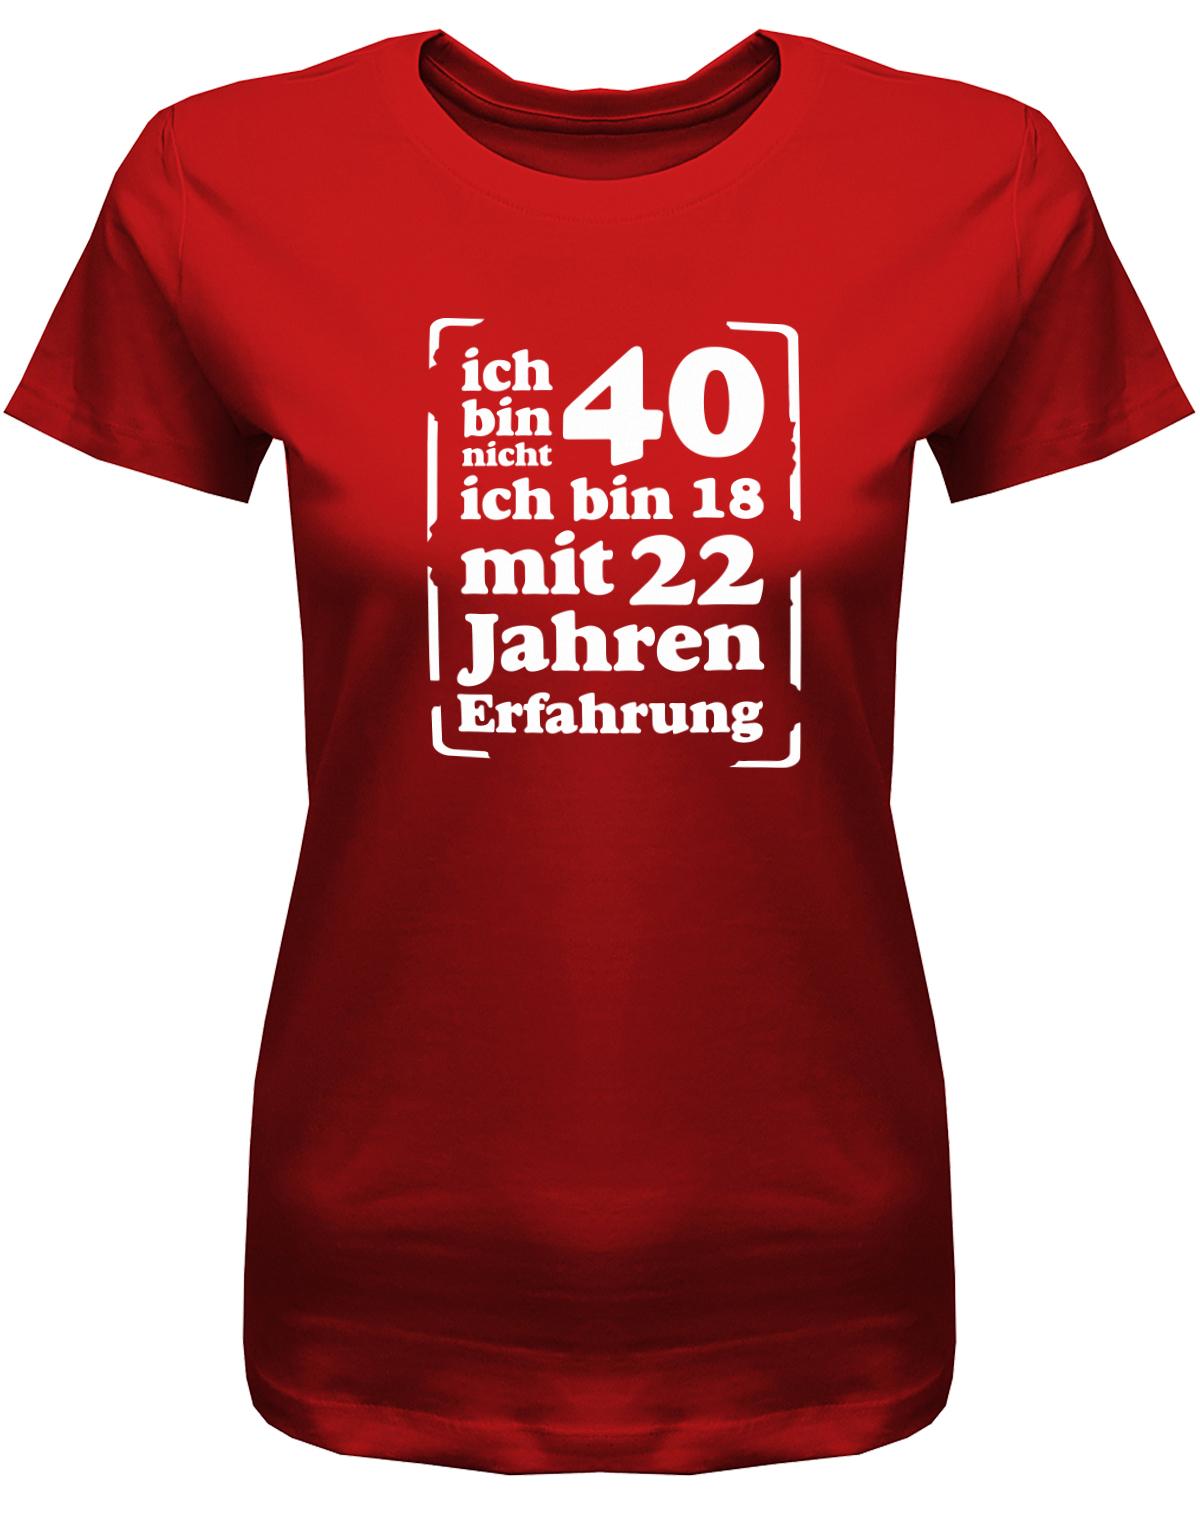 Lustiges T-Shirt zum 40. Geburtstag für die Frau Bedruckt mit Ich bin nicht 40, ich bin 18, mit 32 Jahren Erfahrung. Rot